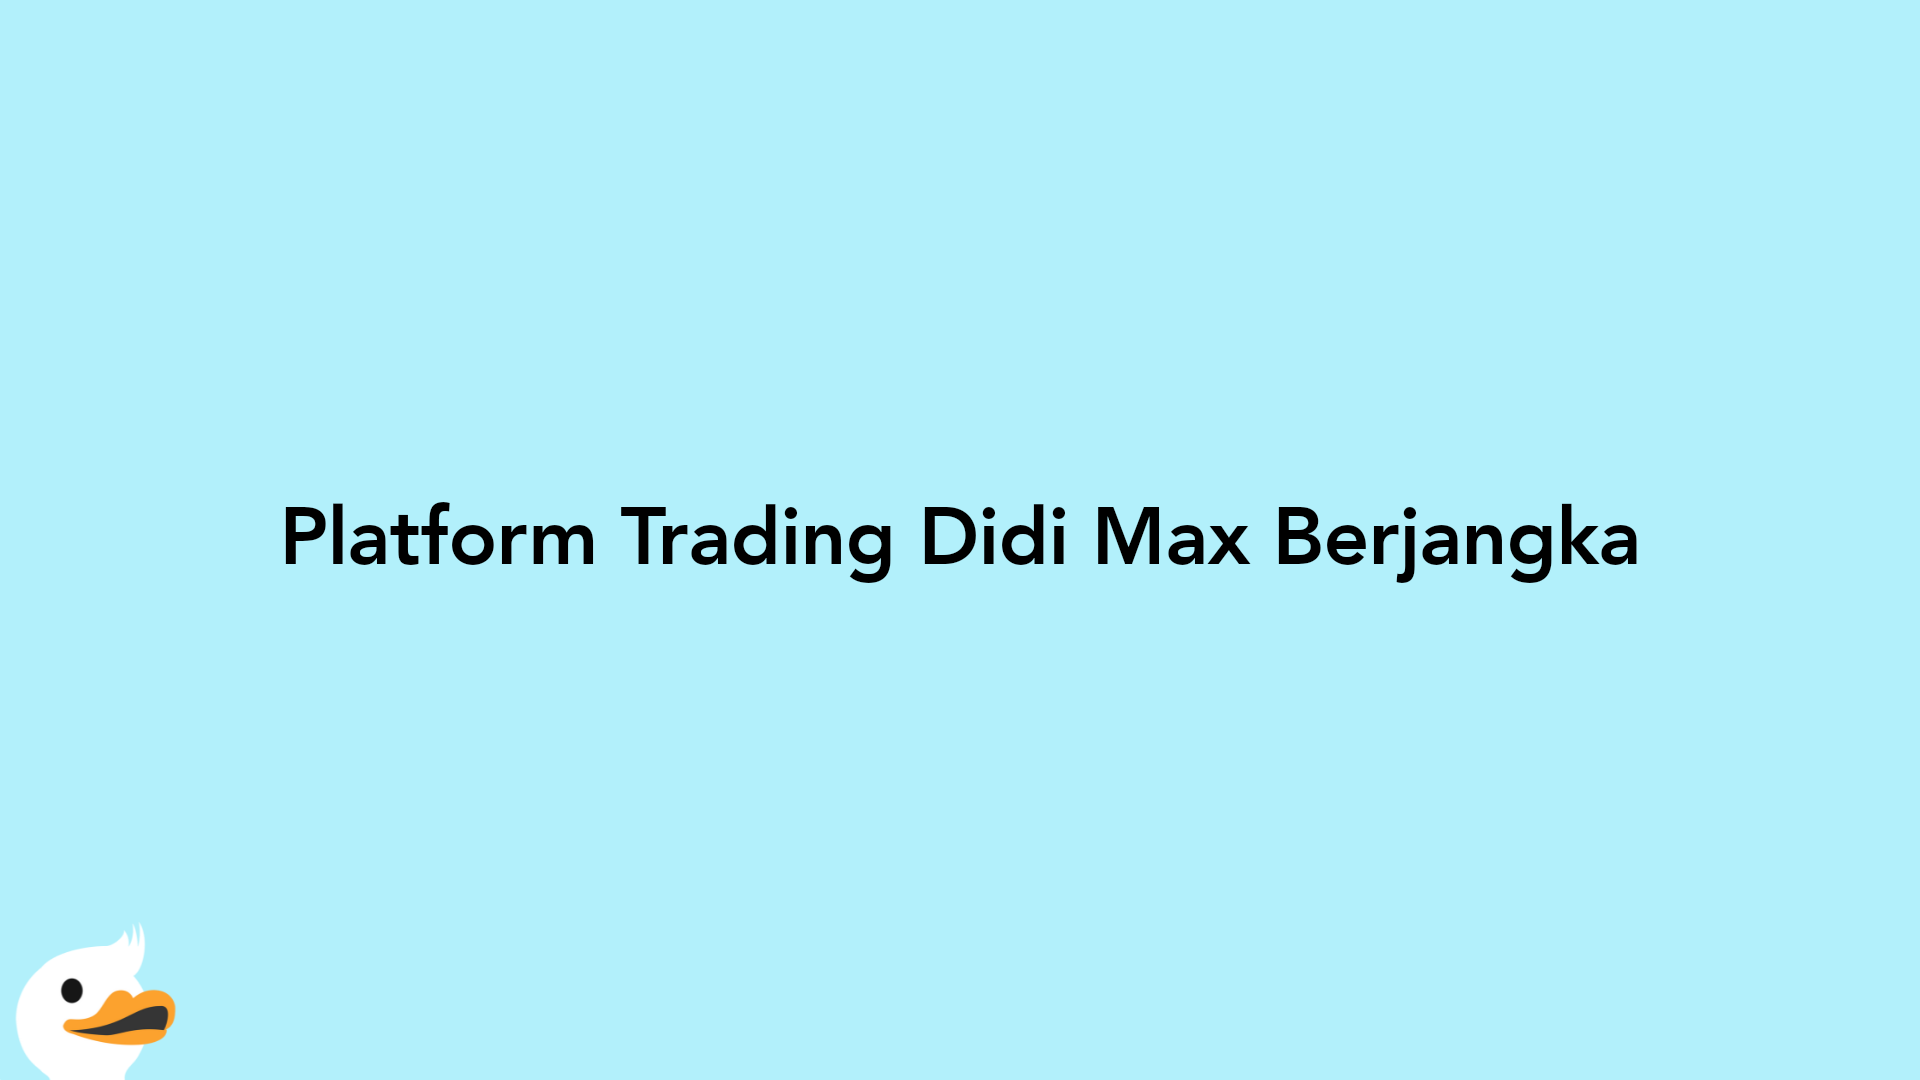 Platform Trading Didi Max Berjangka